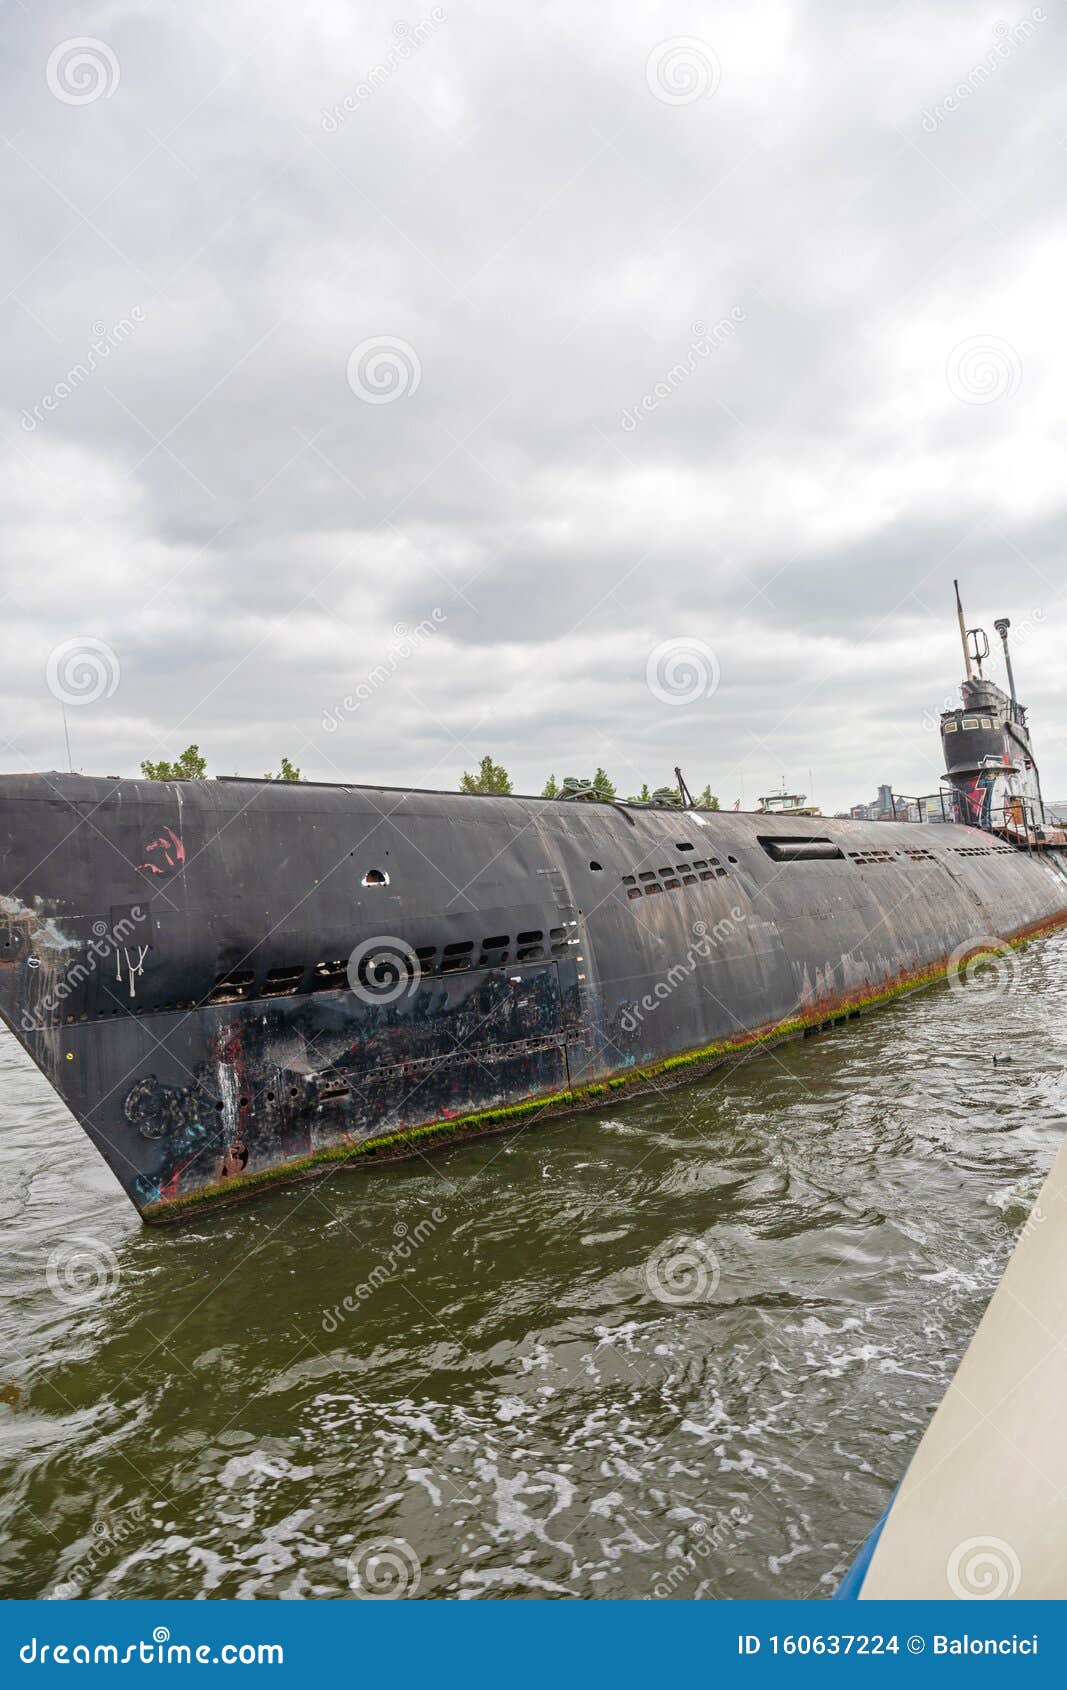 decommissioned abandoned submarine